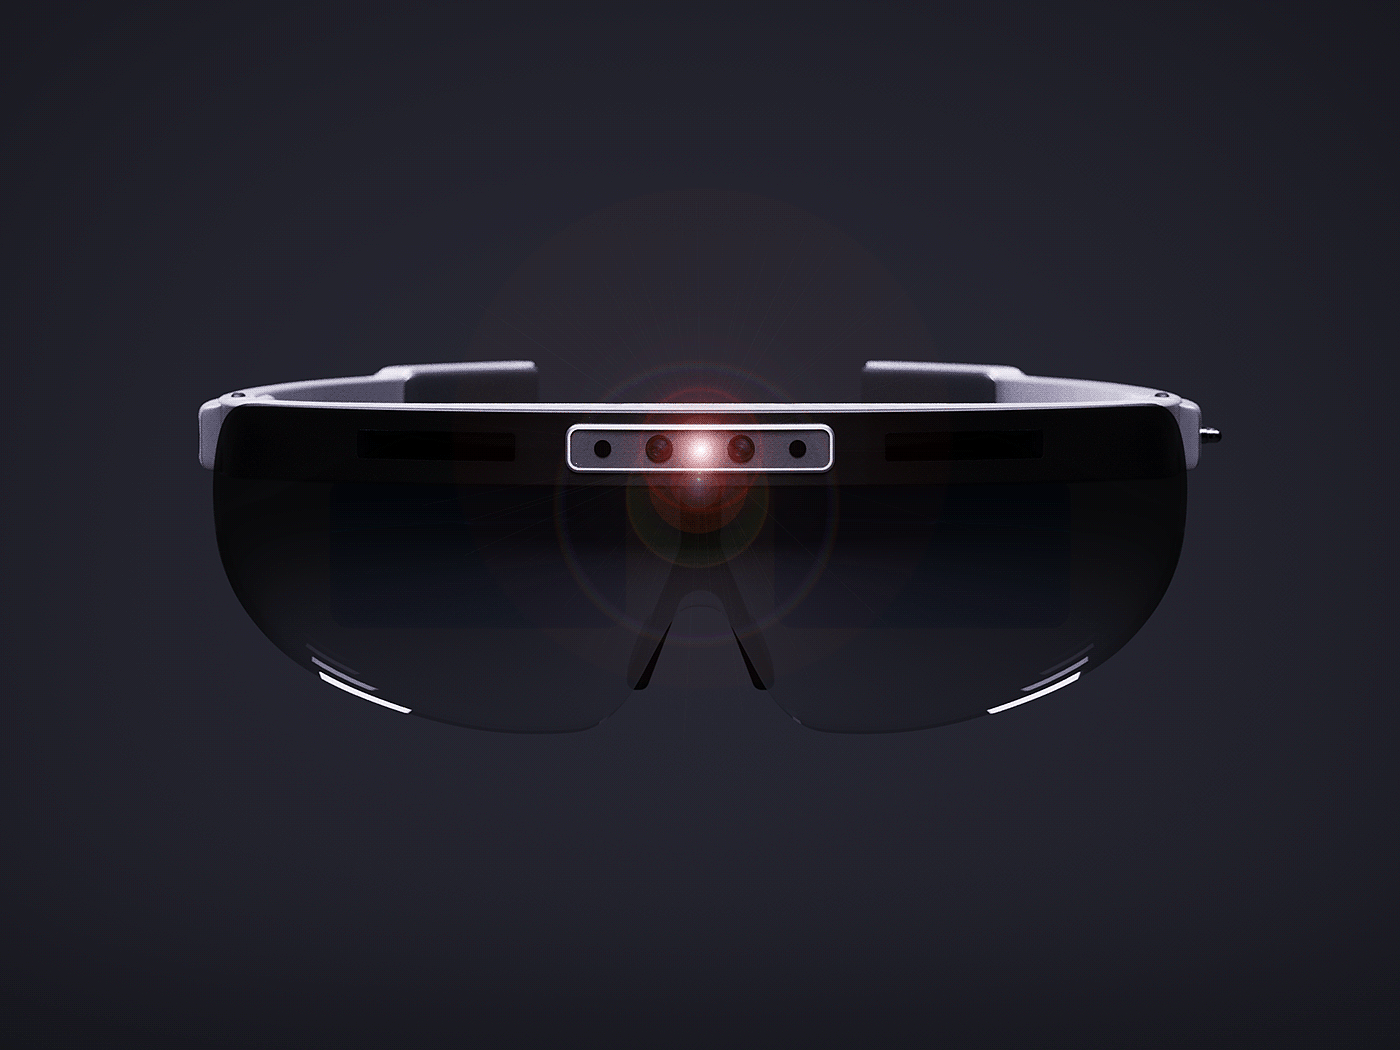 Polaris Extreme，ar眼镜，数码，智能，